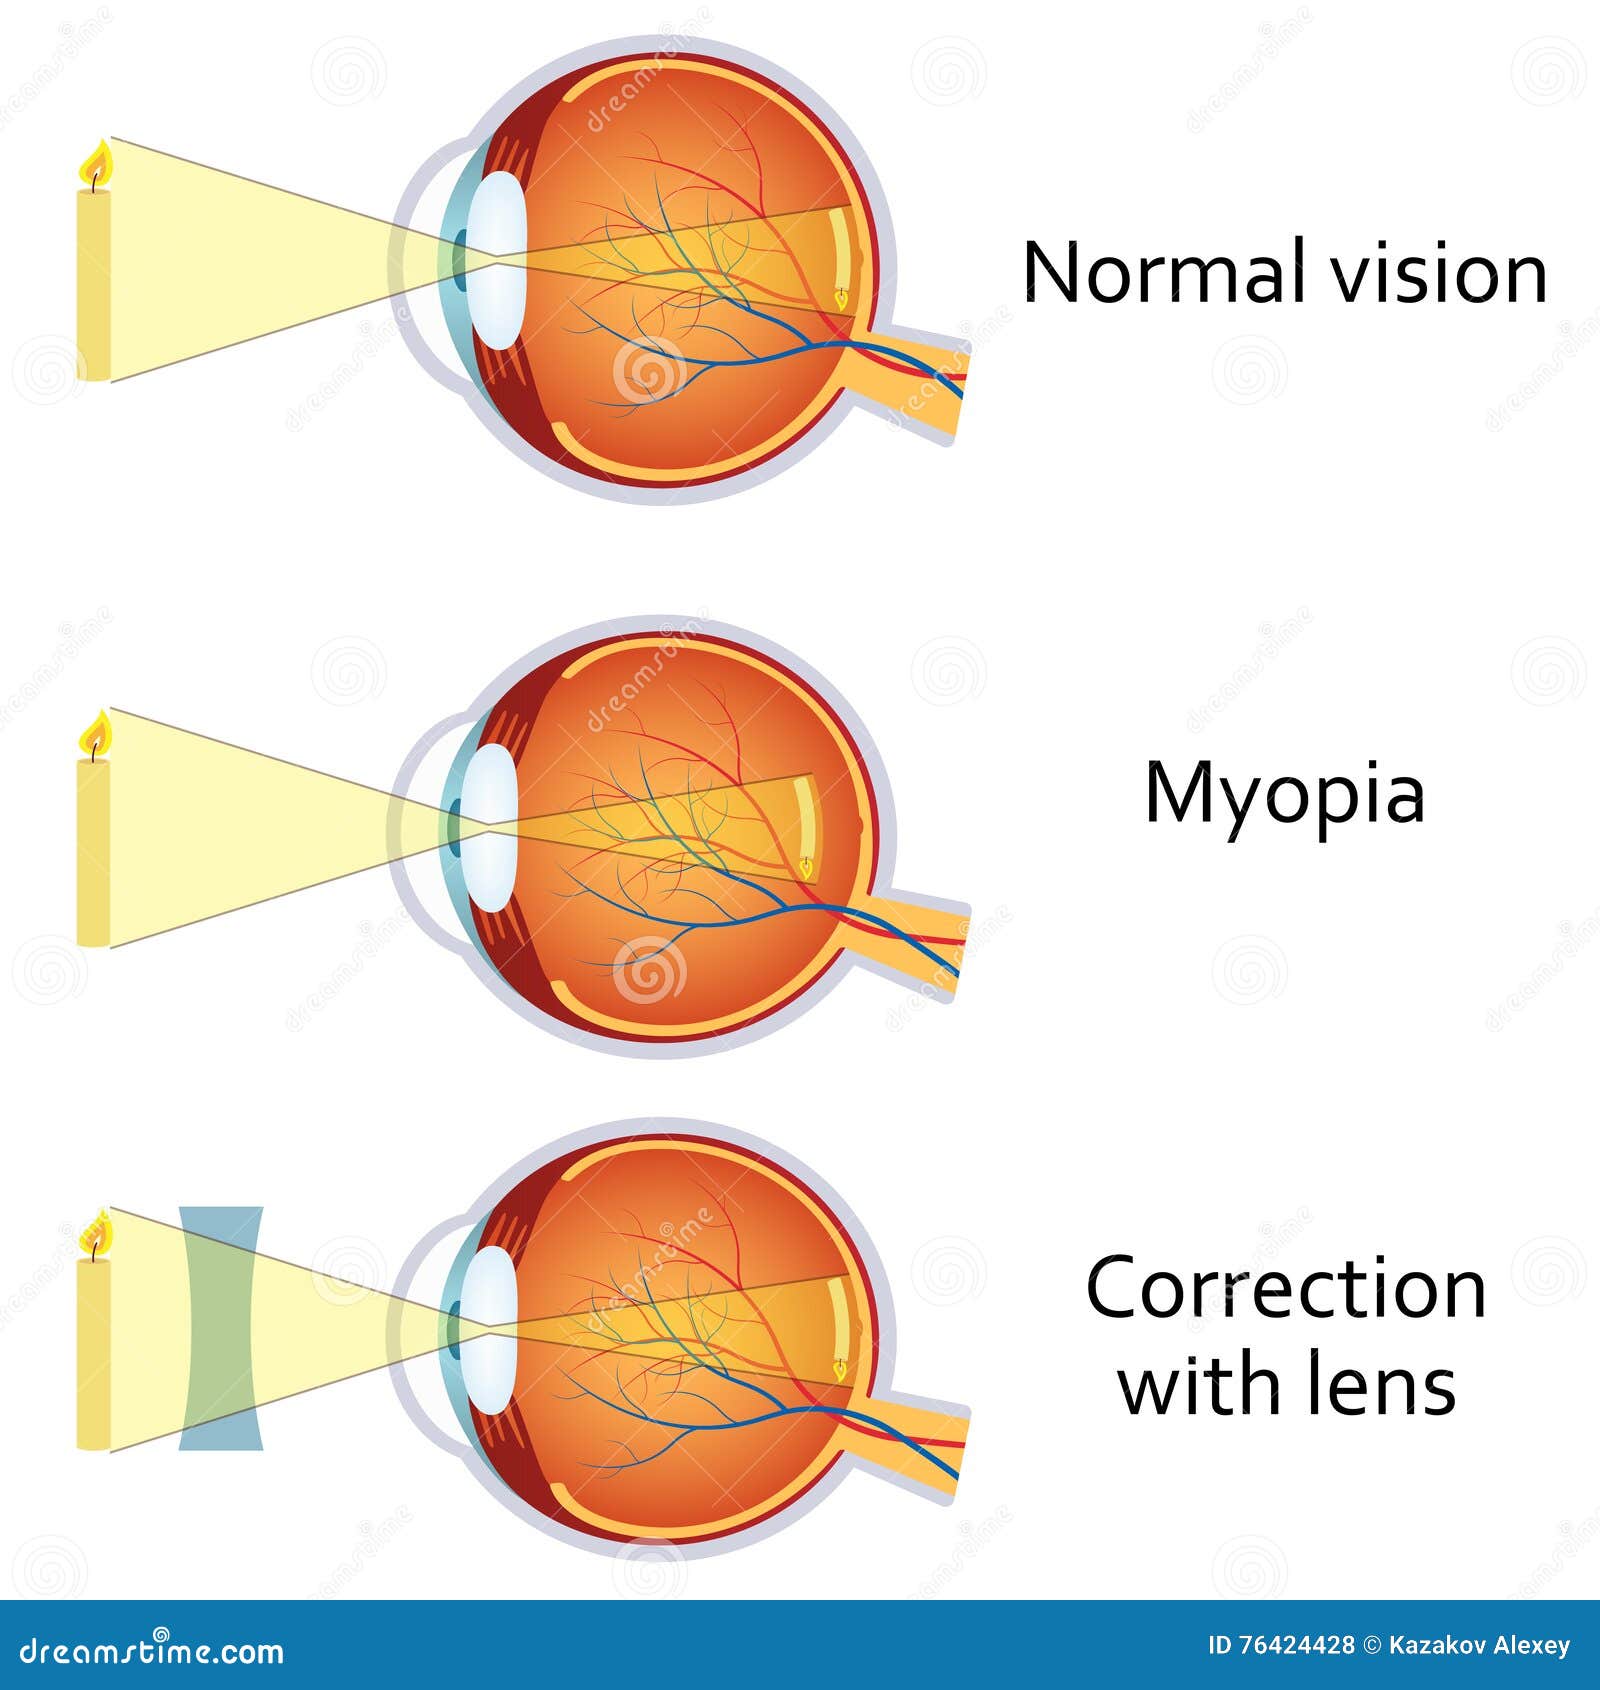 myopia és hyperopia megjelölés)